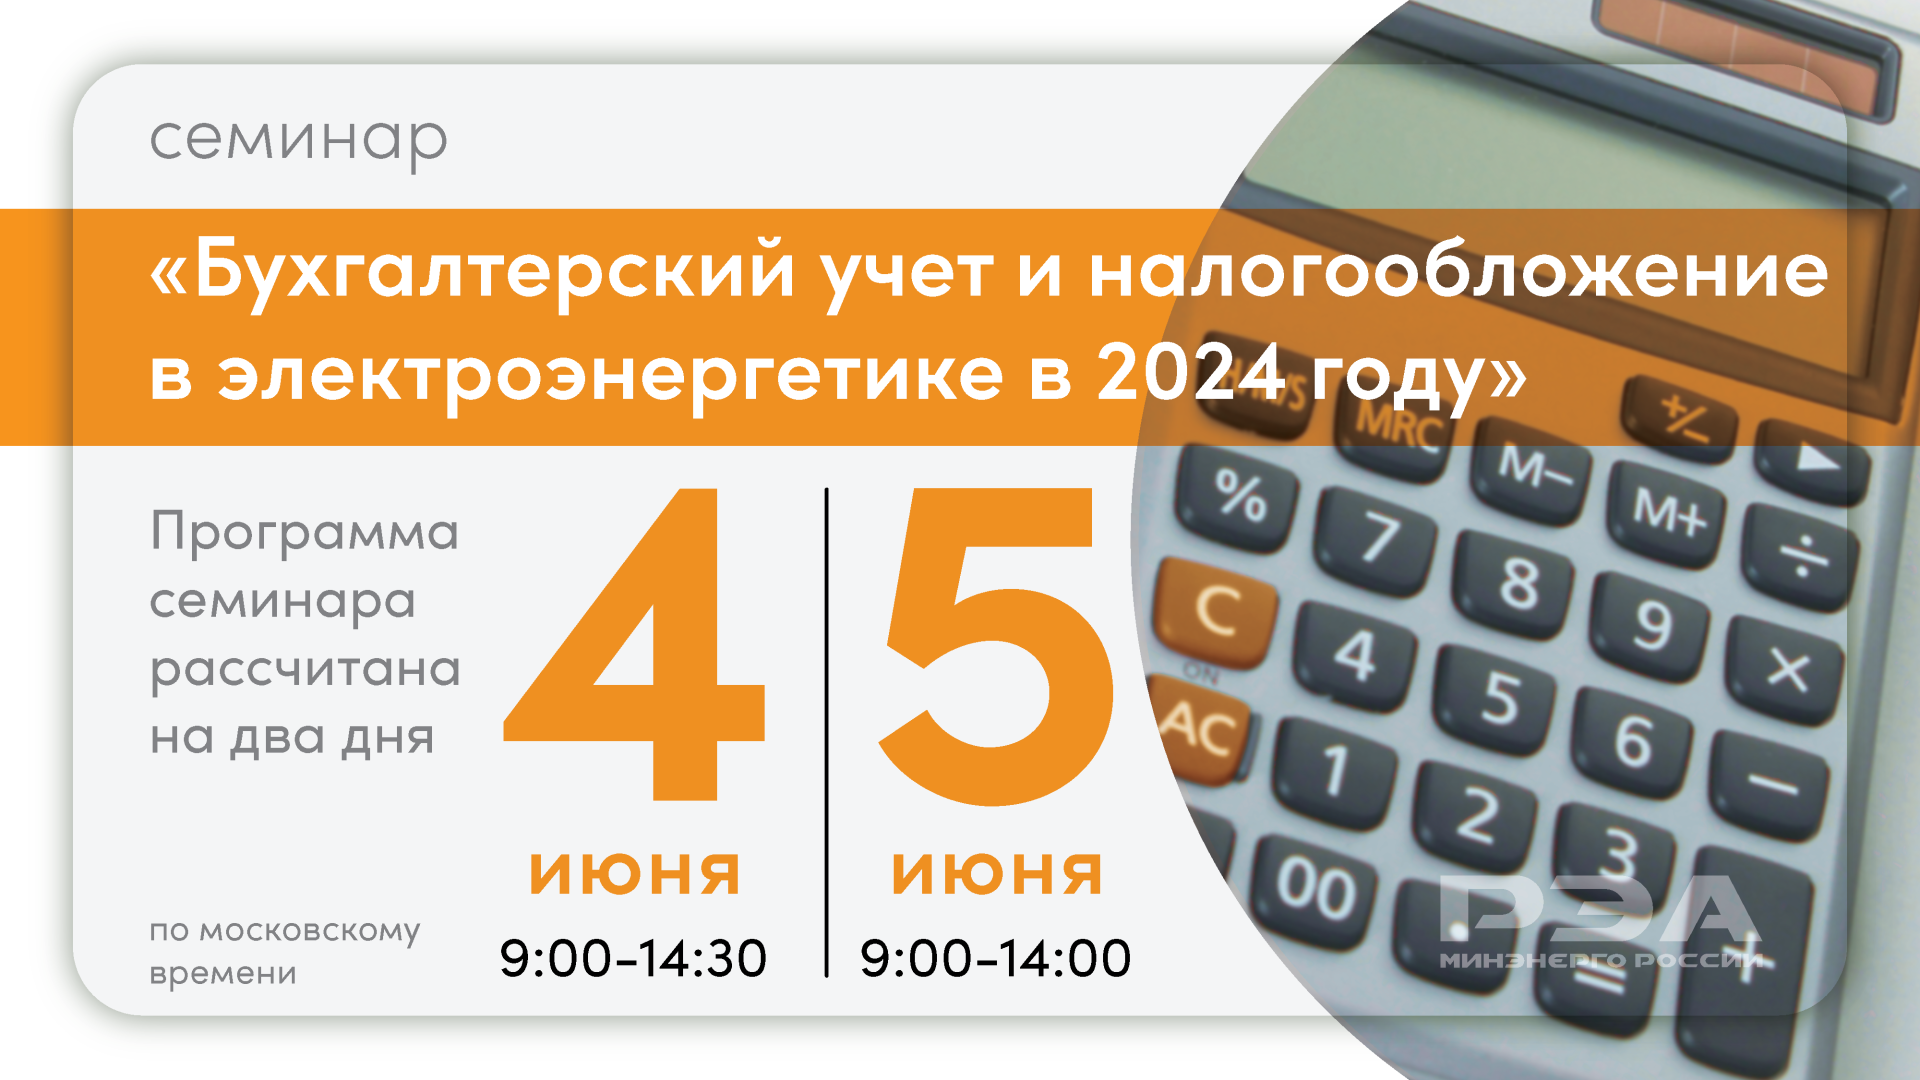 Изменения в налоговом и бухгалтерском законодательстве для электроэнергетической отрасли обсудят на онлайн-семинаре РЭА Минэнерго России